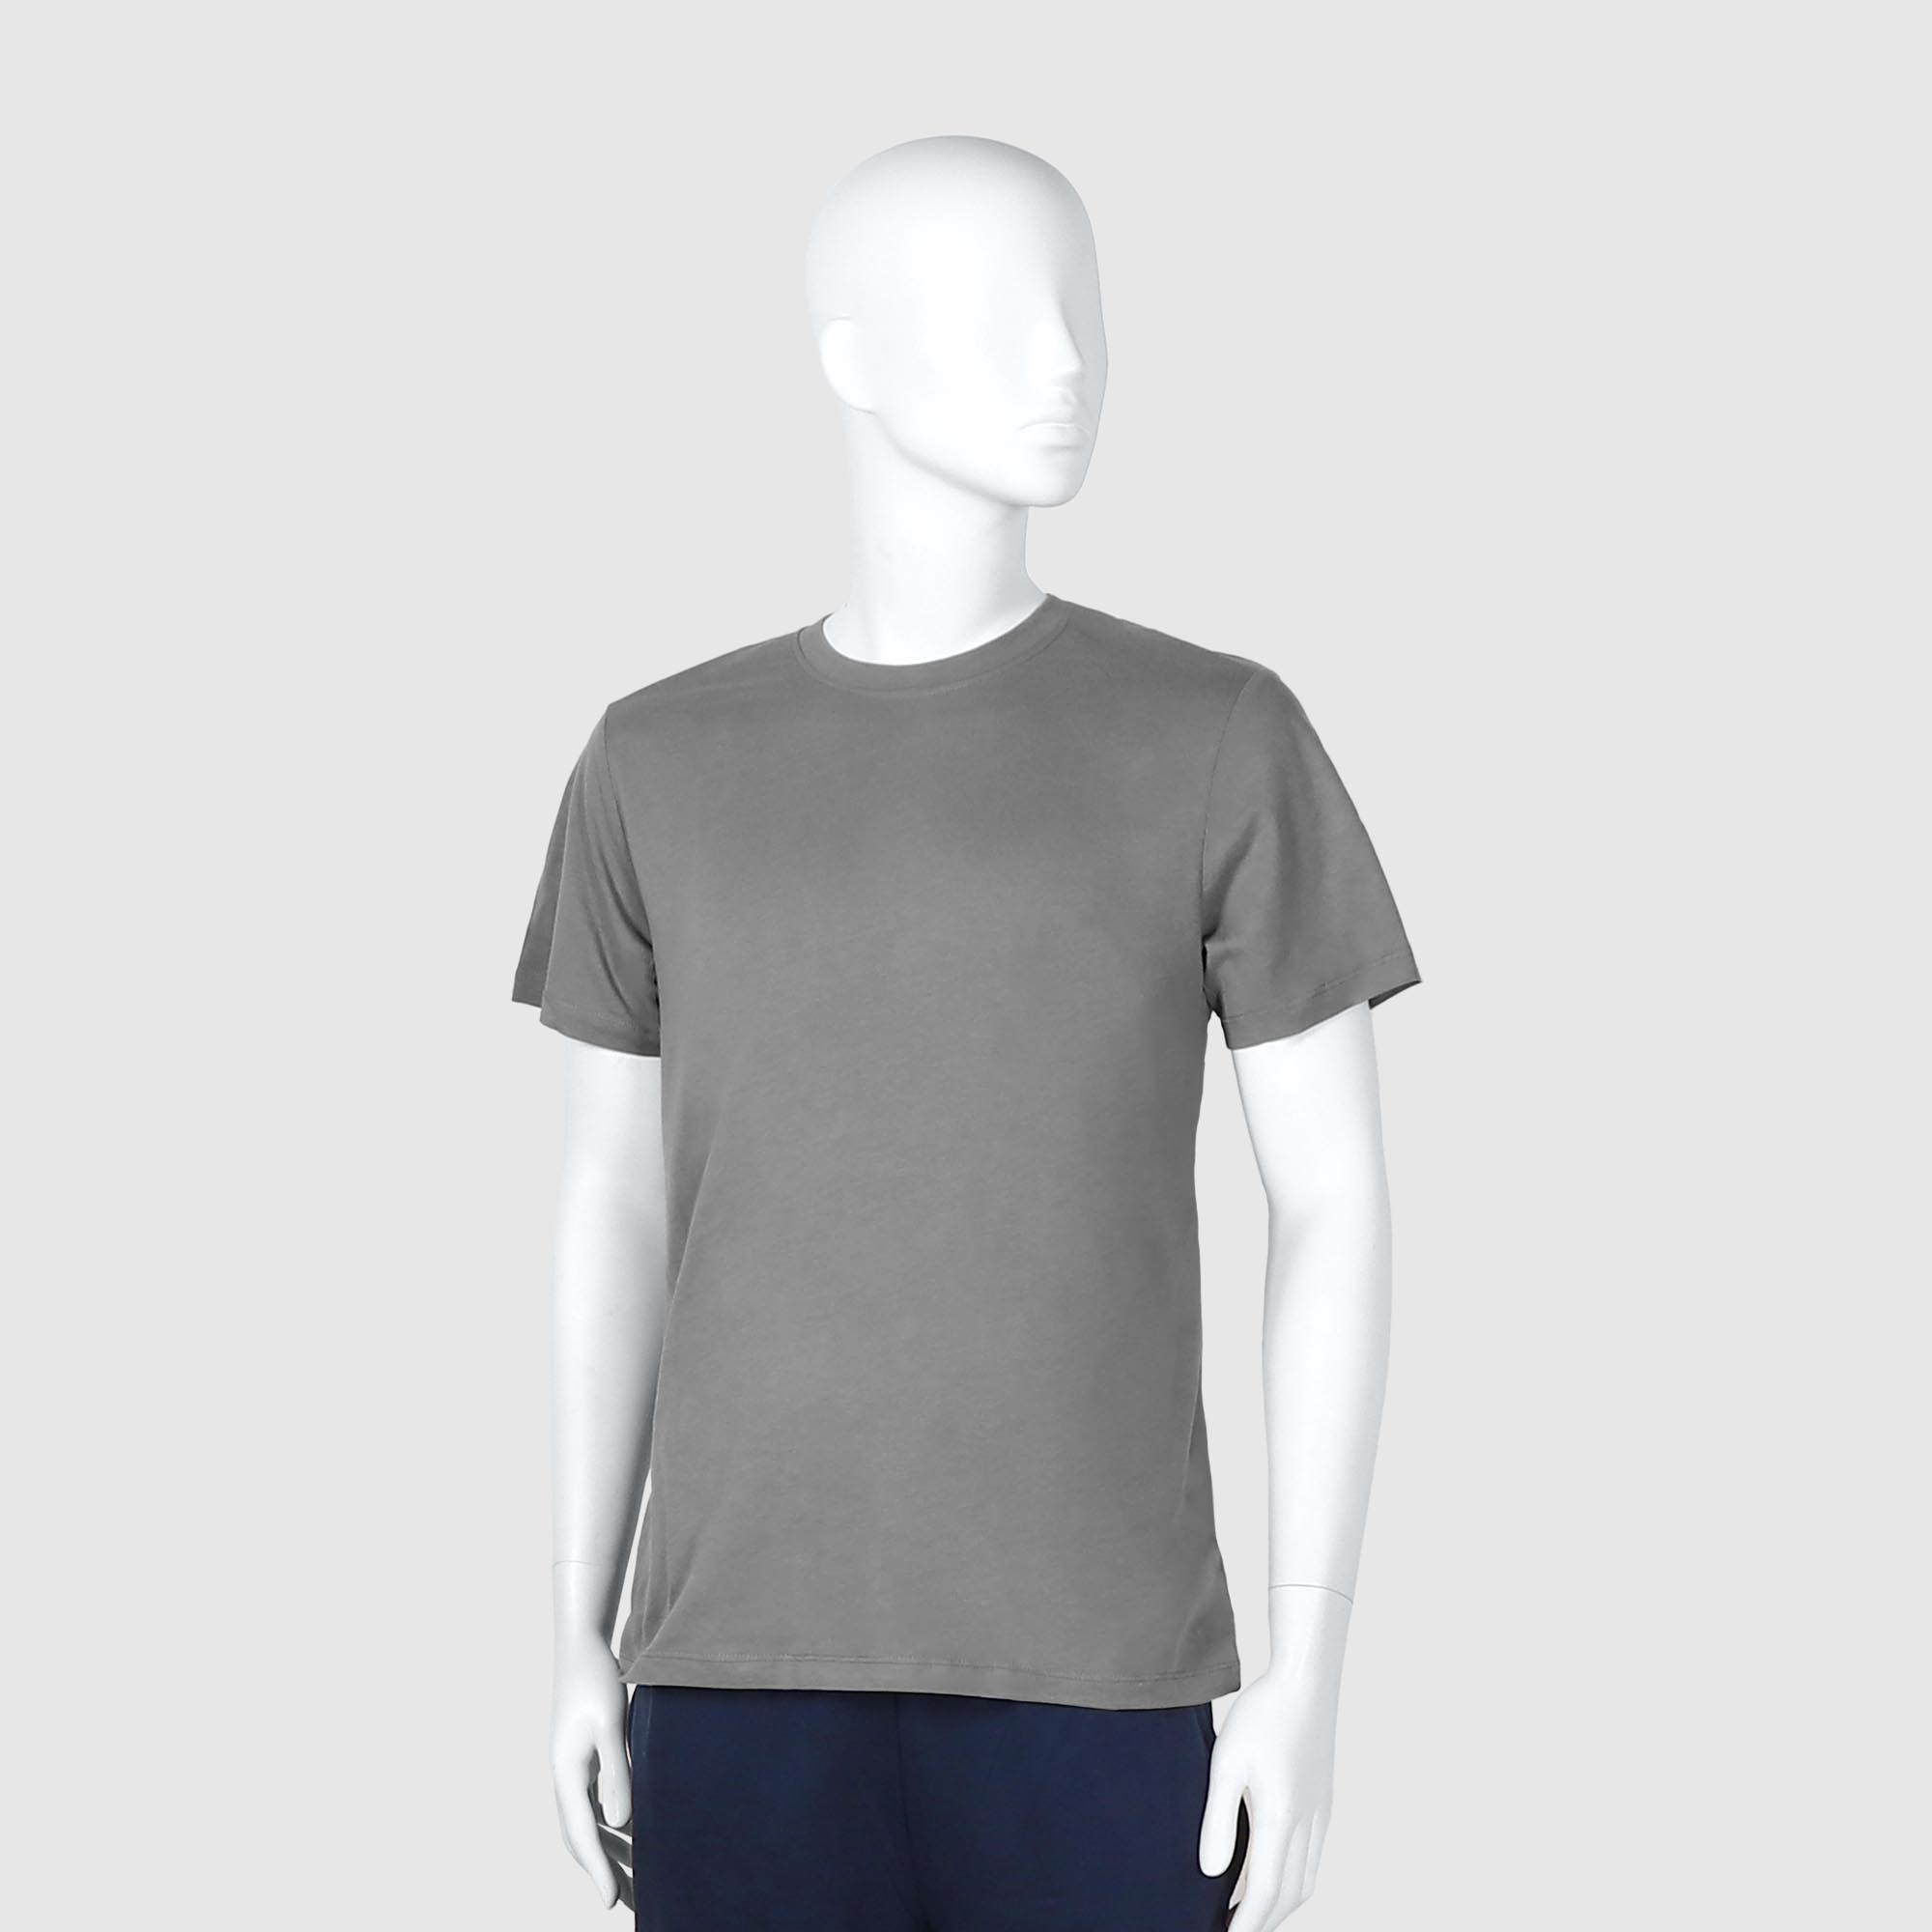 Мужская футболка Diva Teks серая (DTD-04), цвет серый, размер 52-54